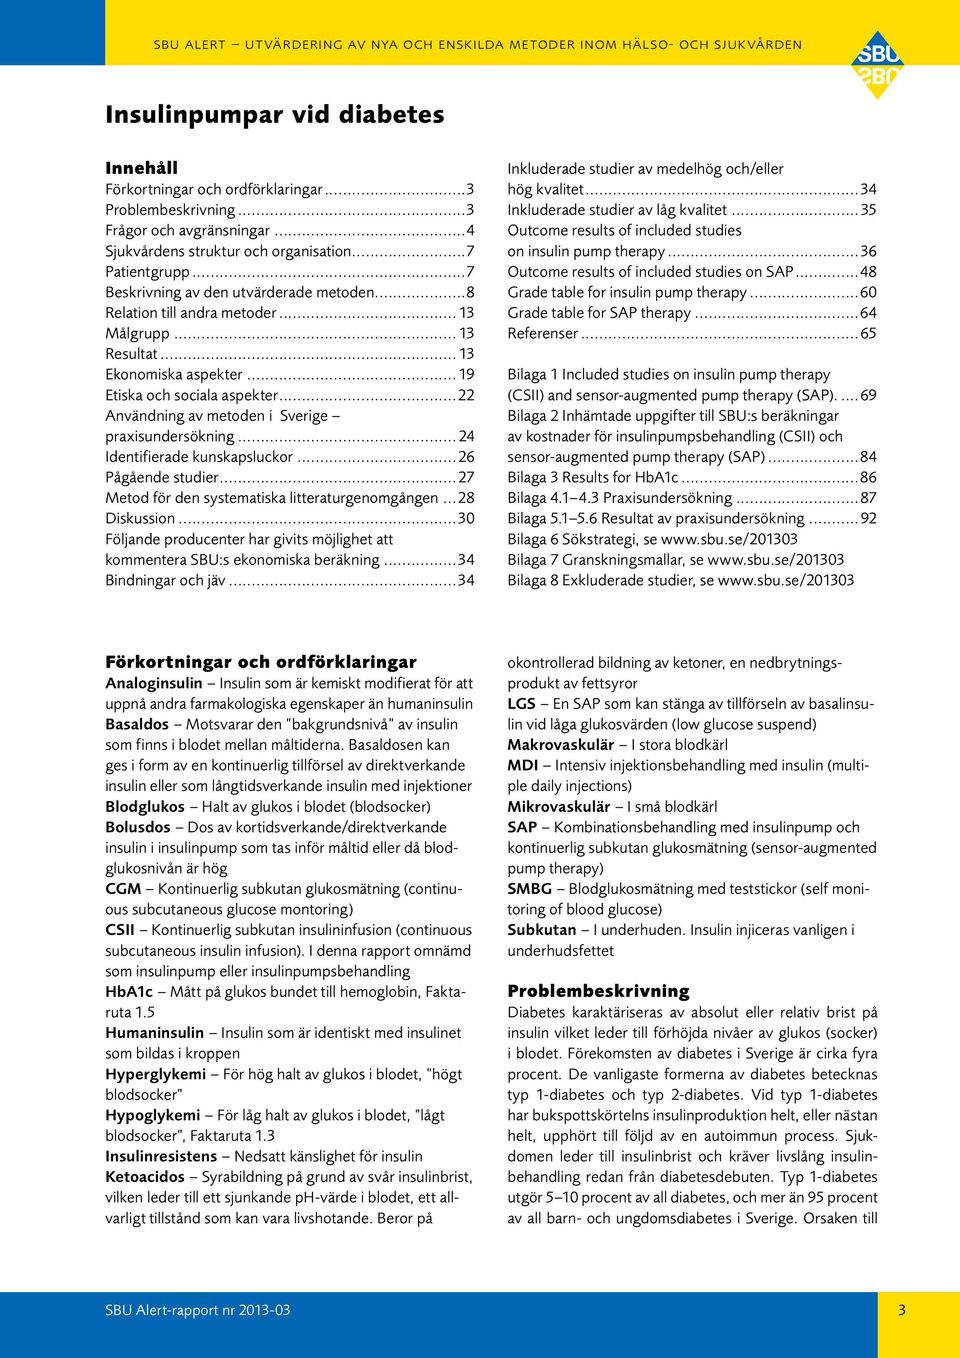 ..22 Användning av metoden i Sverige praxisundersökning... 24 Identifierade kunskapsluckor... 26 Pågående studier...27 Metod för den systematiska litteraturgenomgången...28 Diskussion.